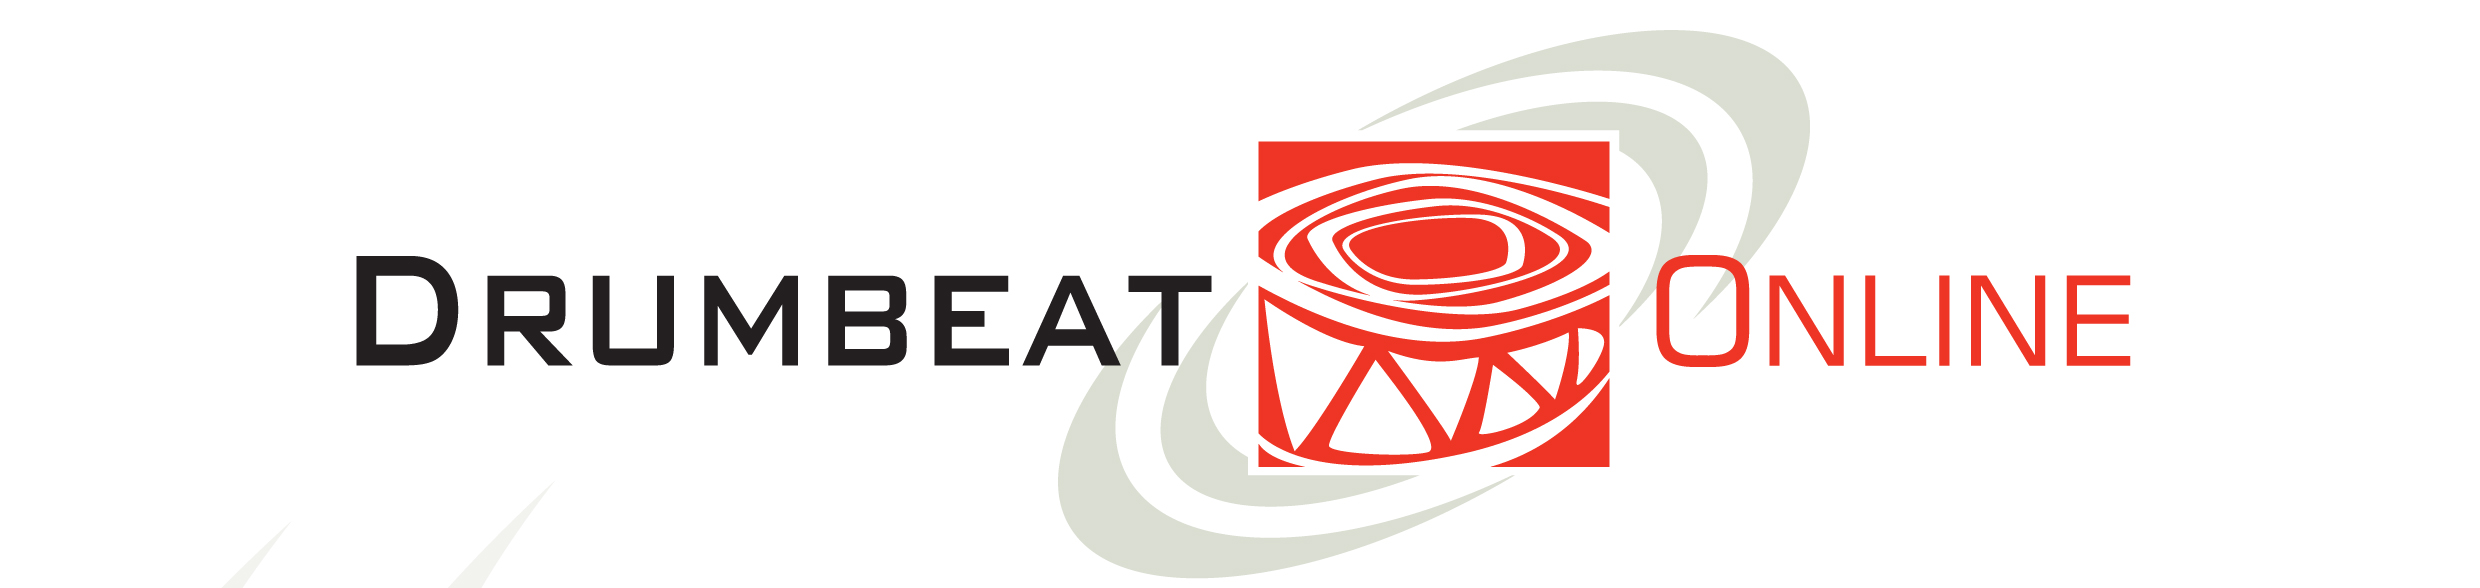 Drumbeat Online Course